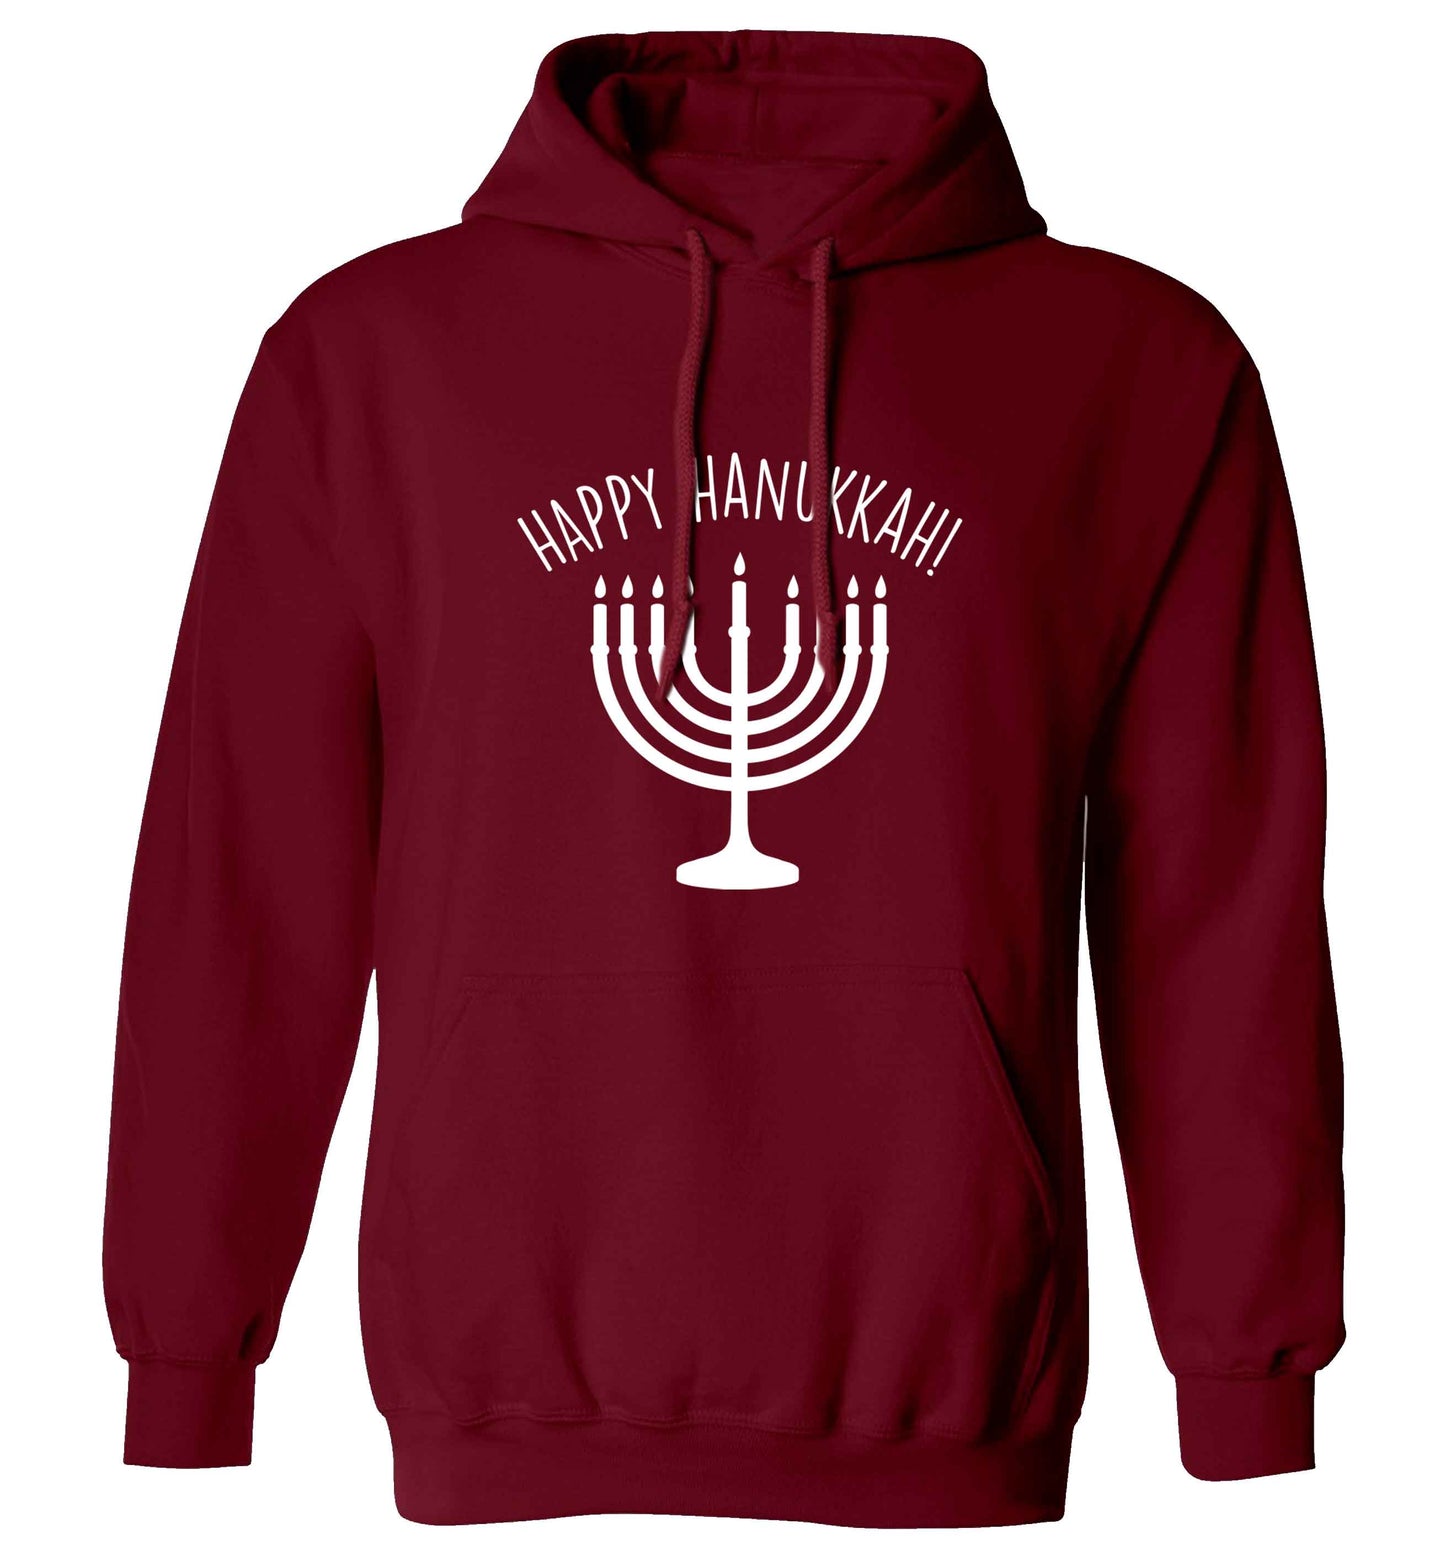 Happy hanukkah adults unisex maroon hoodie 2XL